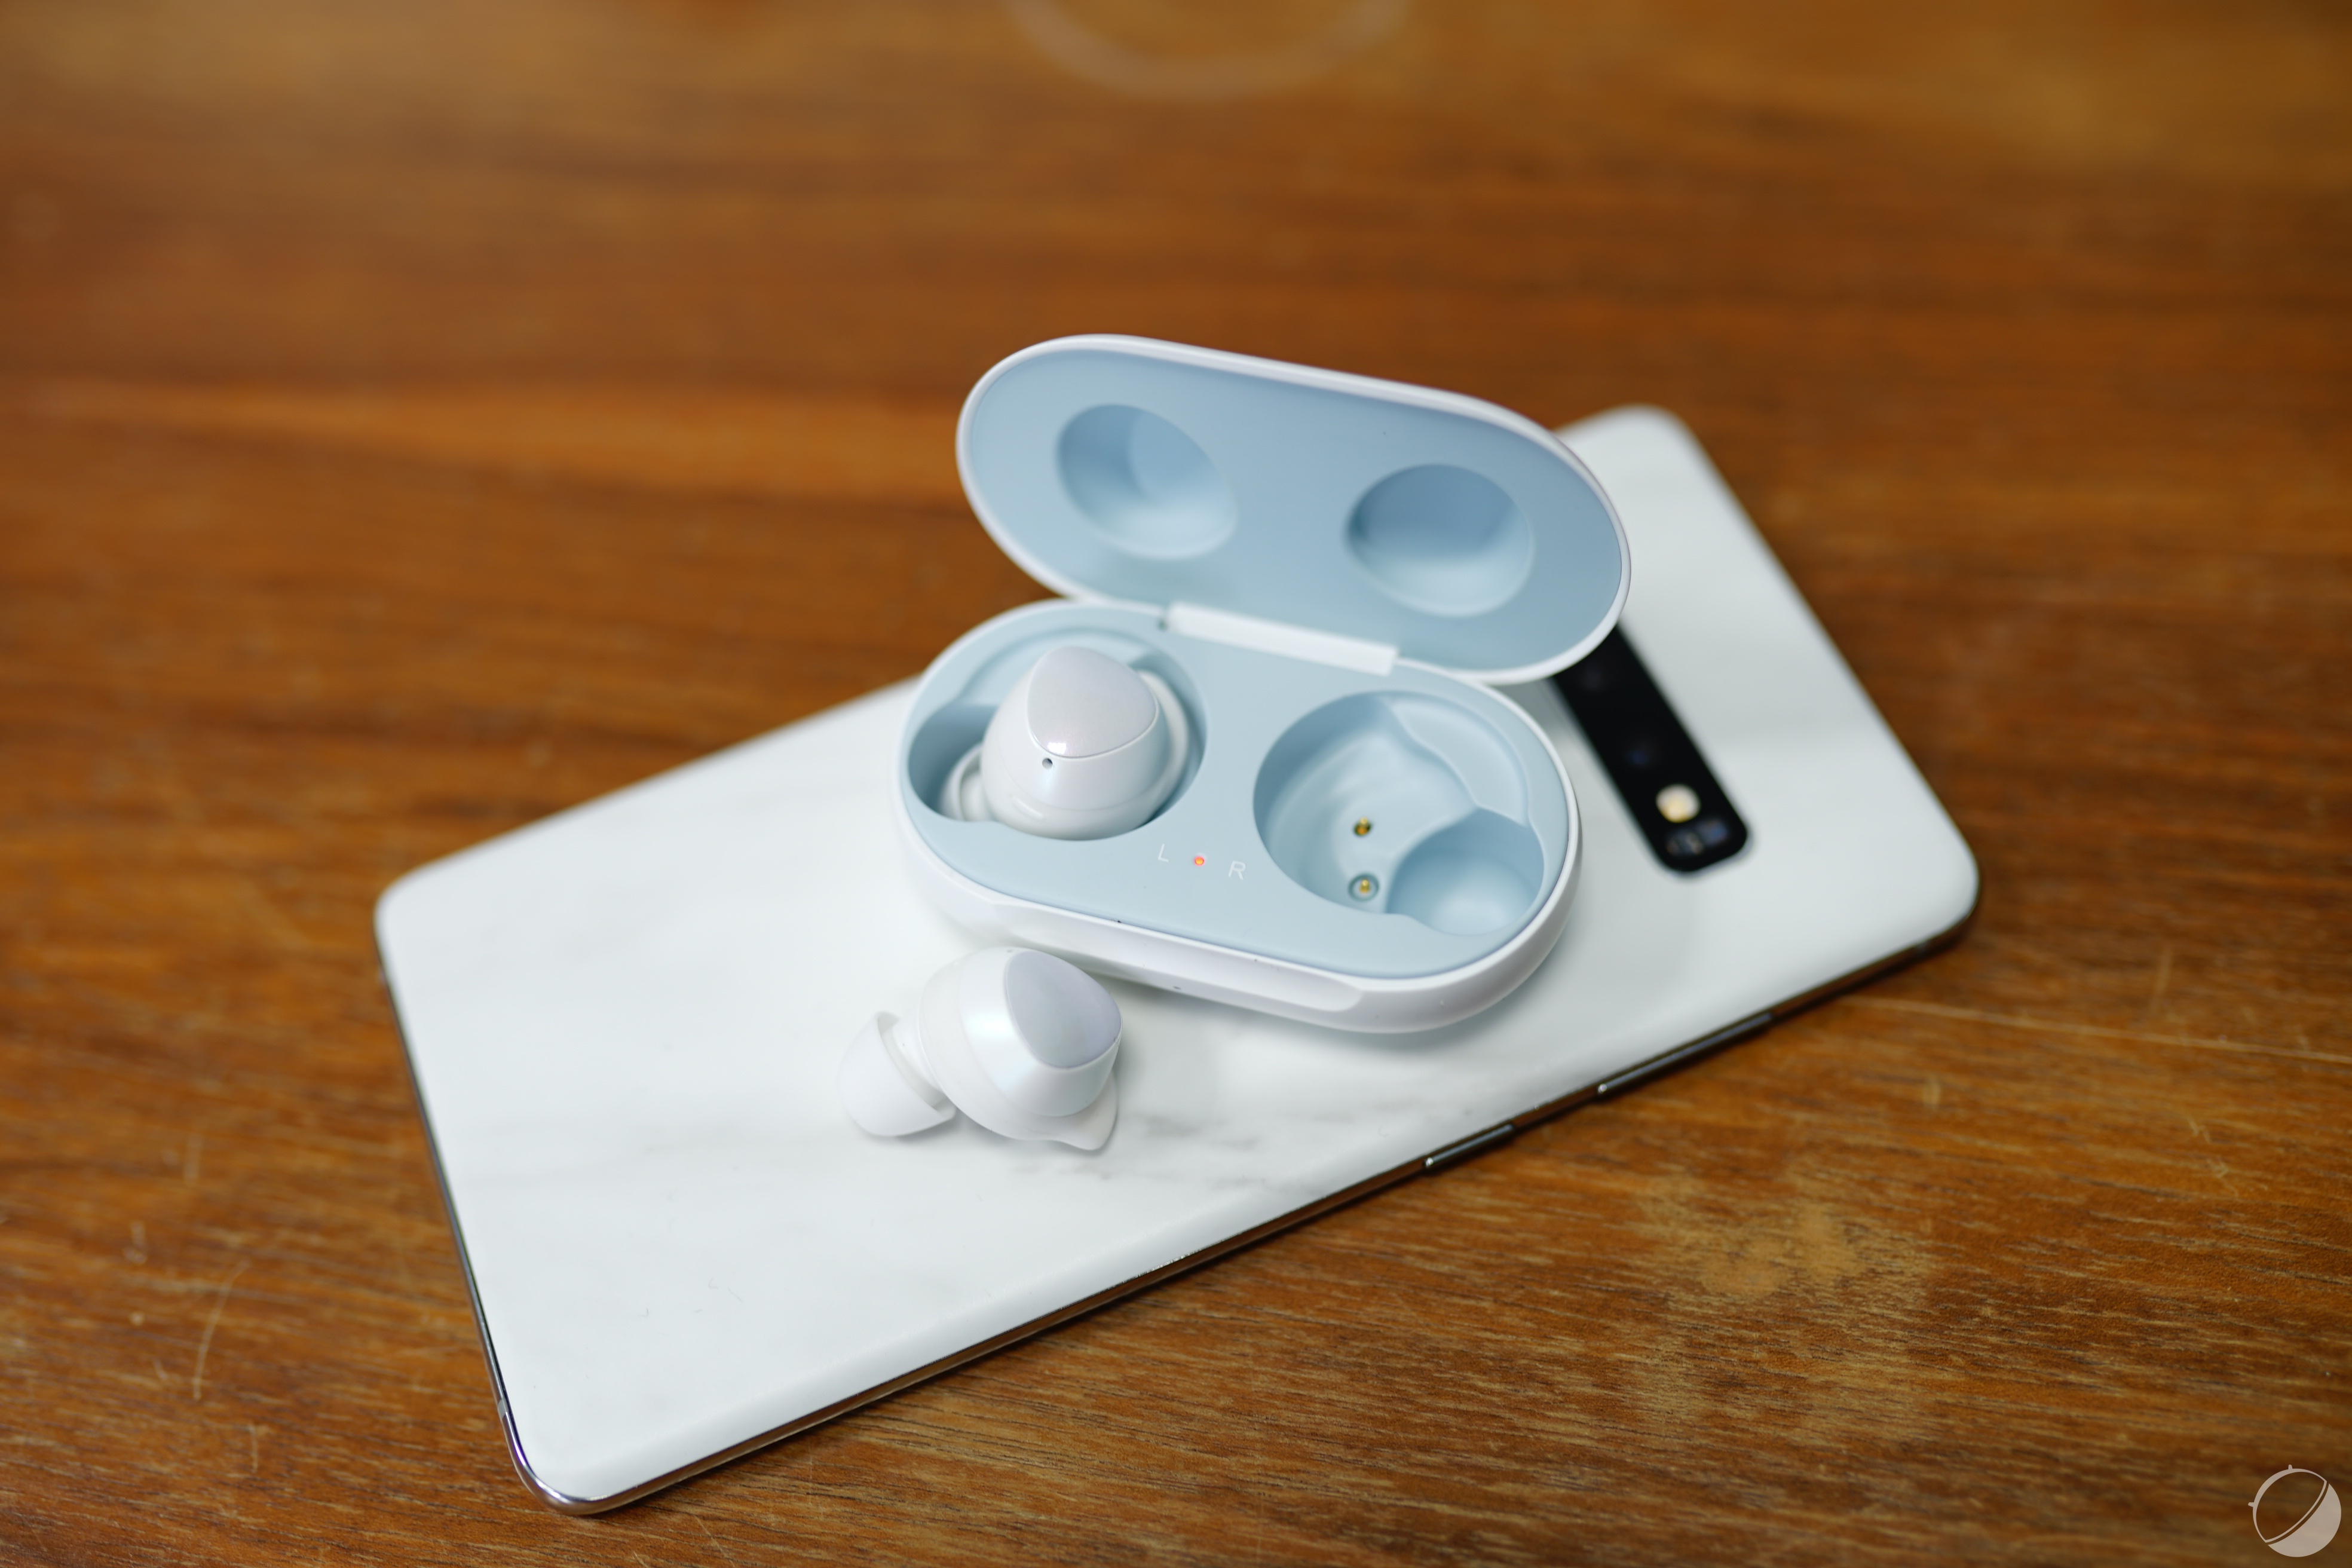 Test : Faut-il craquer pour cette oreillette Bluetooth de luxe ?